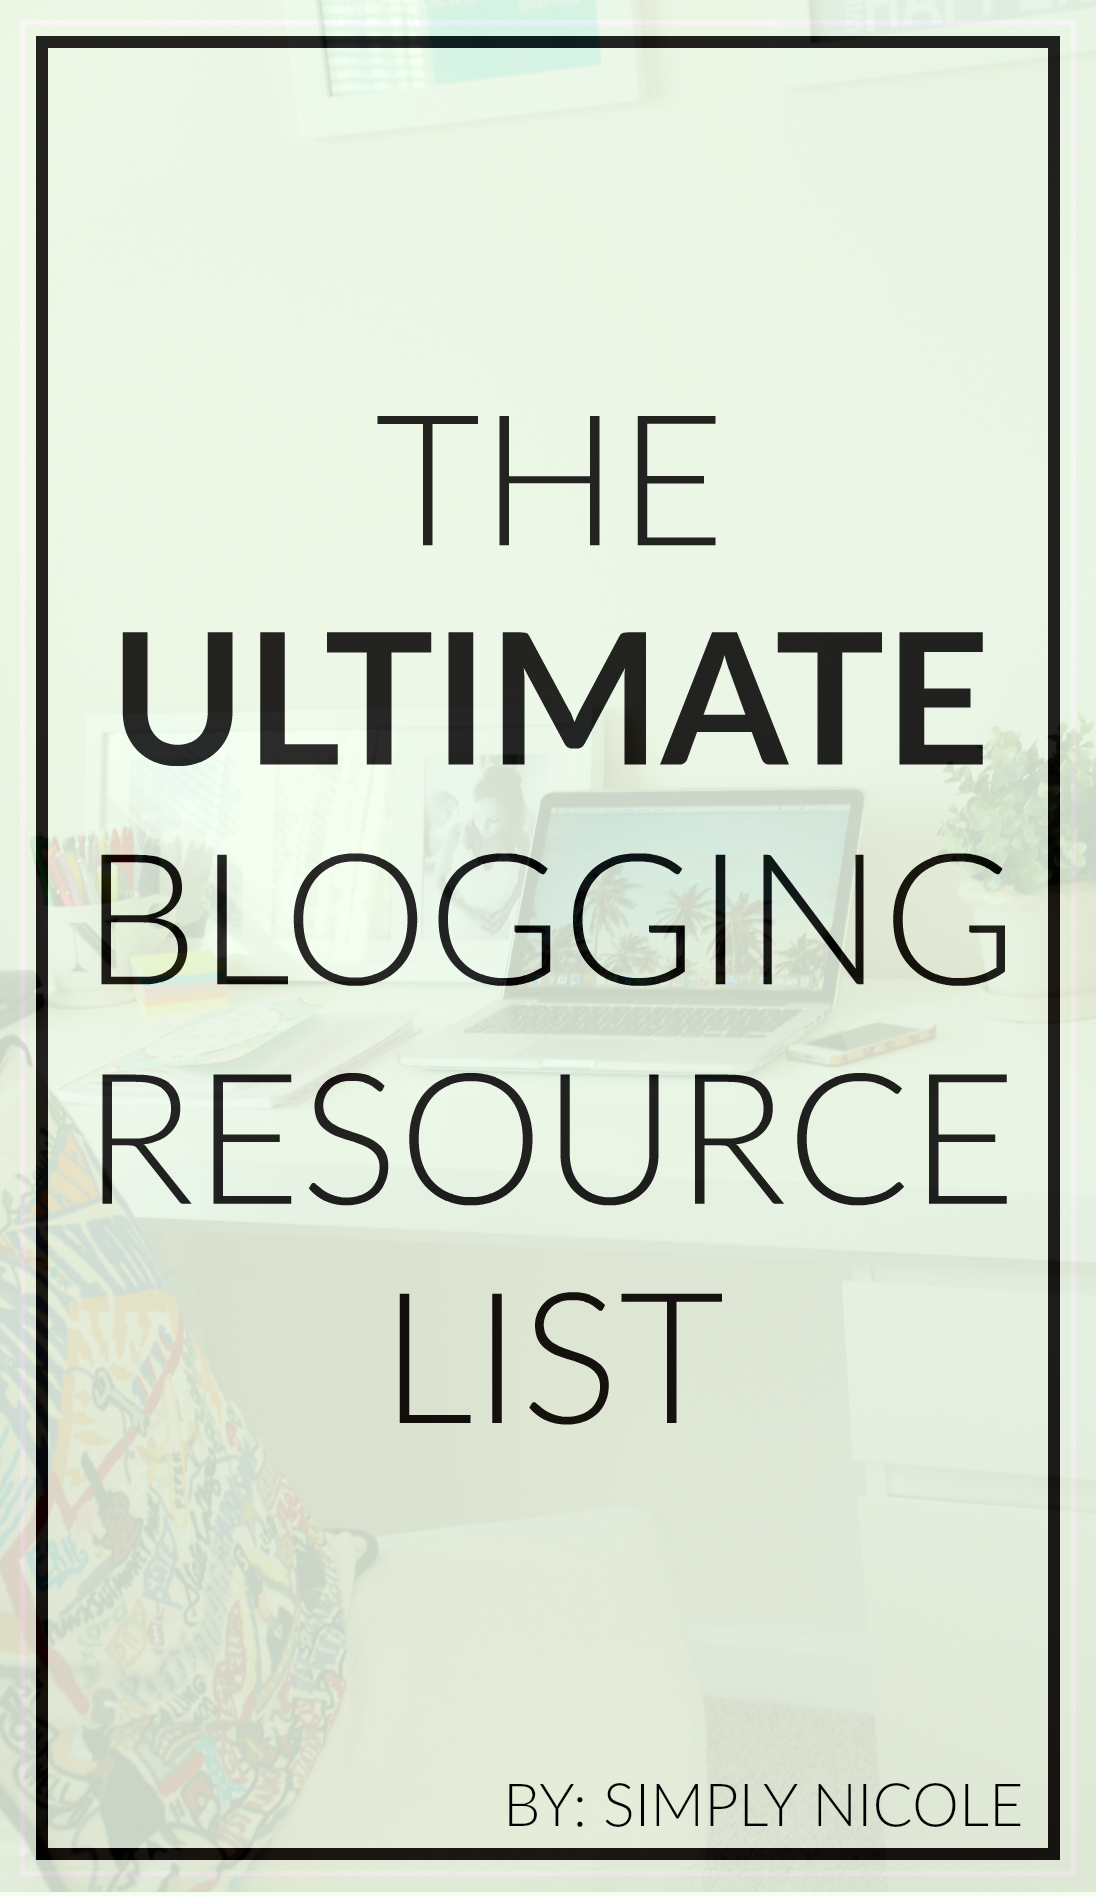 Blogging Resource List